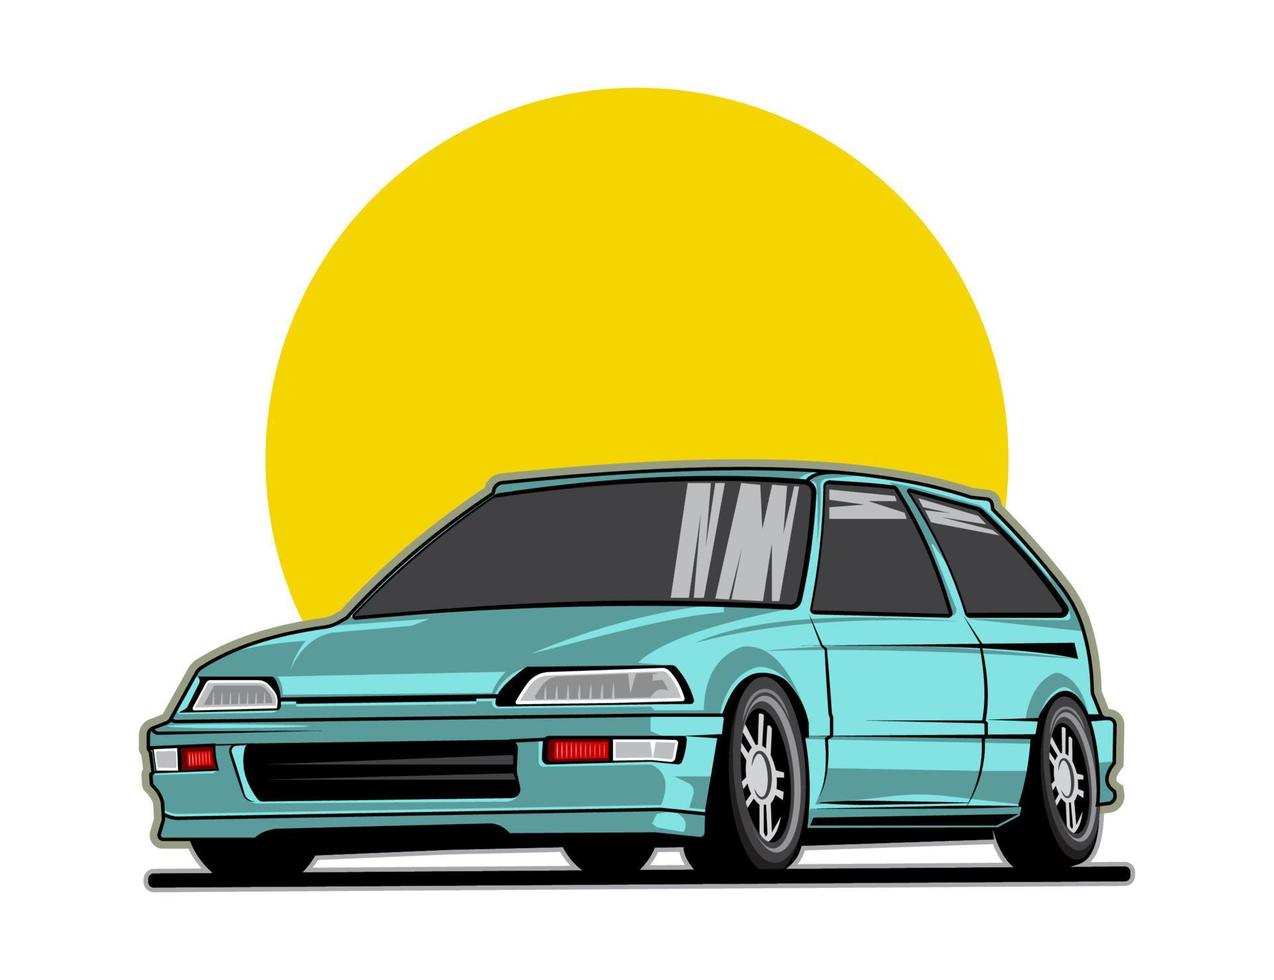 diseño de automóviles japoneses en color de tono azul para el vector gráfico de ilustración de automóviles